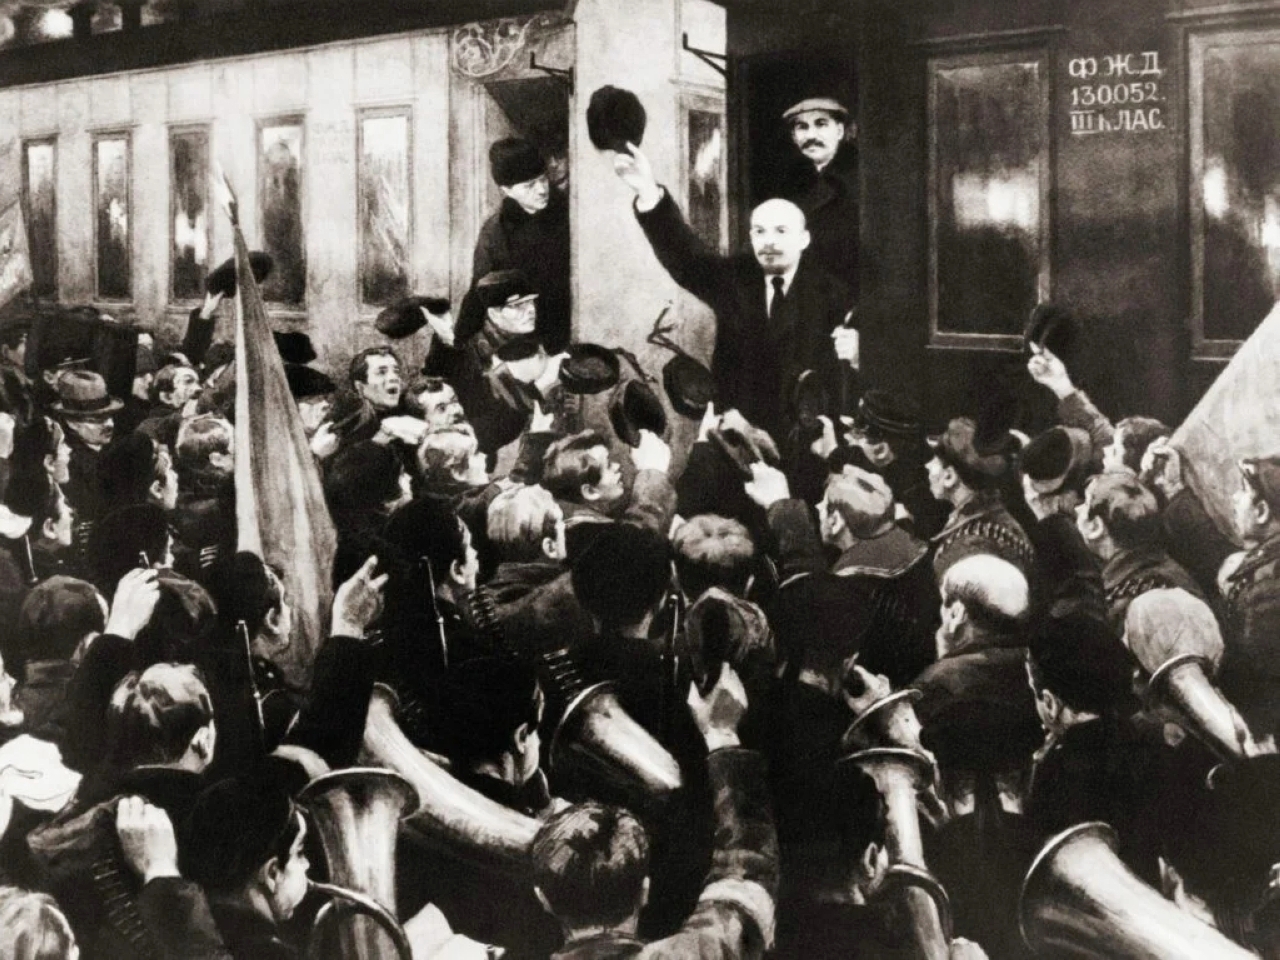 الصورة : 1917 فلاديمير لينين يعود إلى بيتروغراد بعد عقد في المنفى ليتسلم مقاليد الثورة الروسية